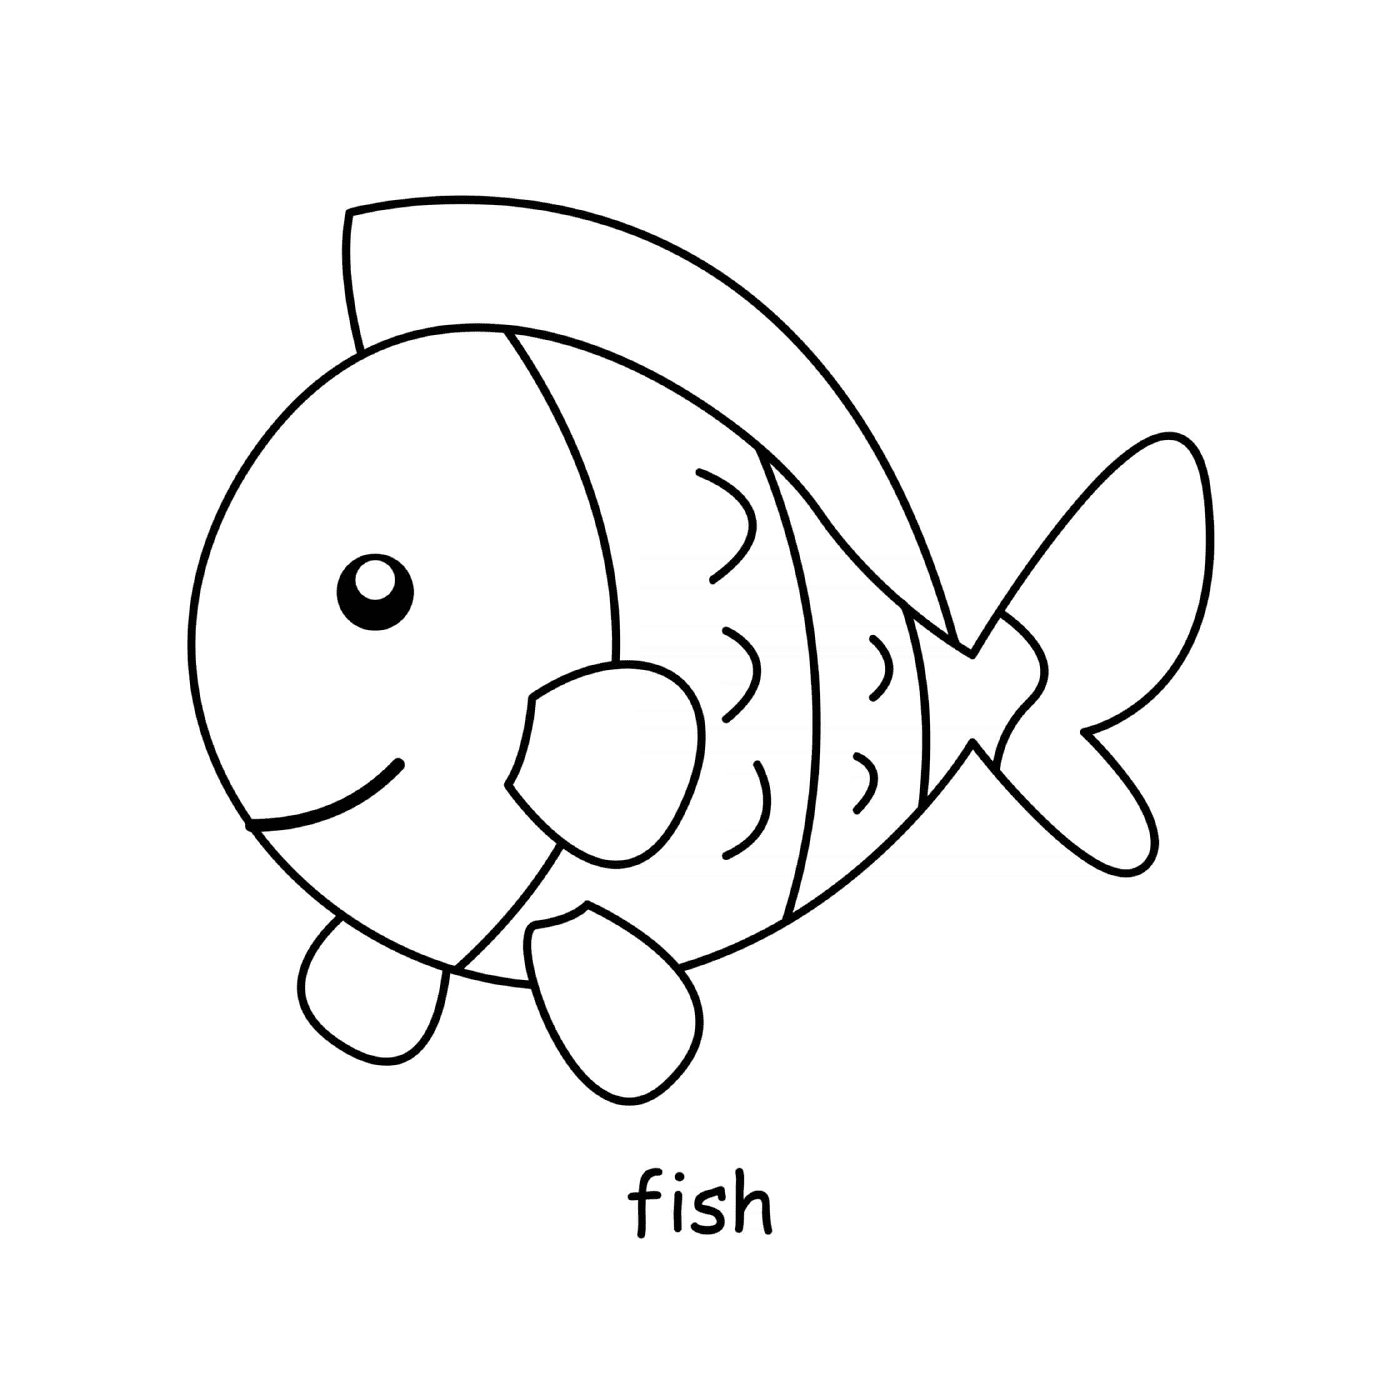  Fish in the sea 